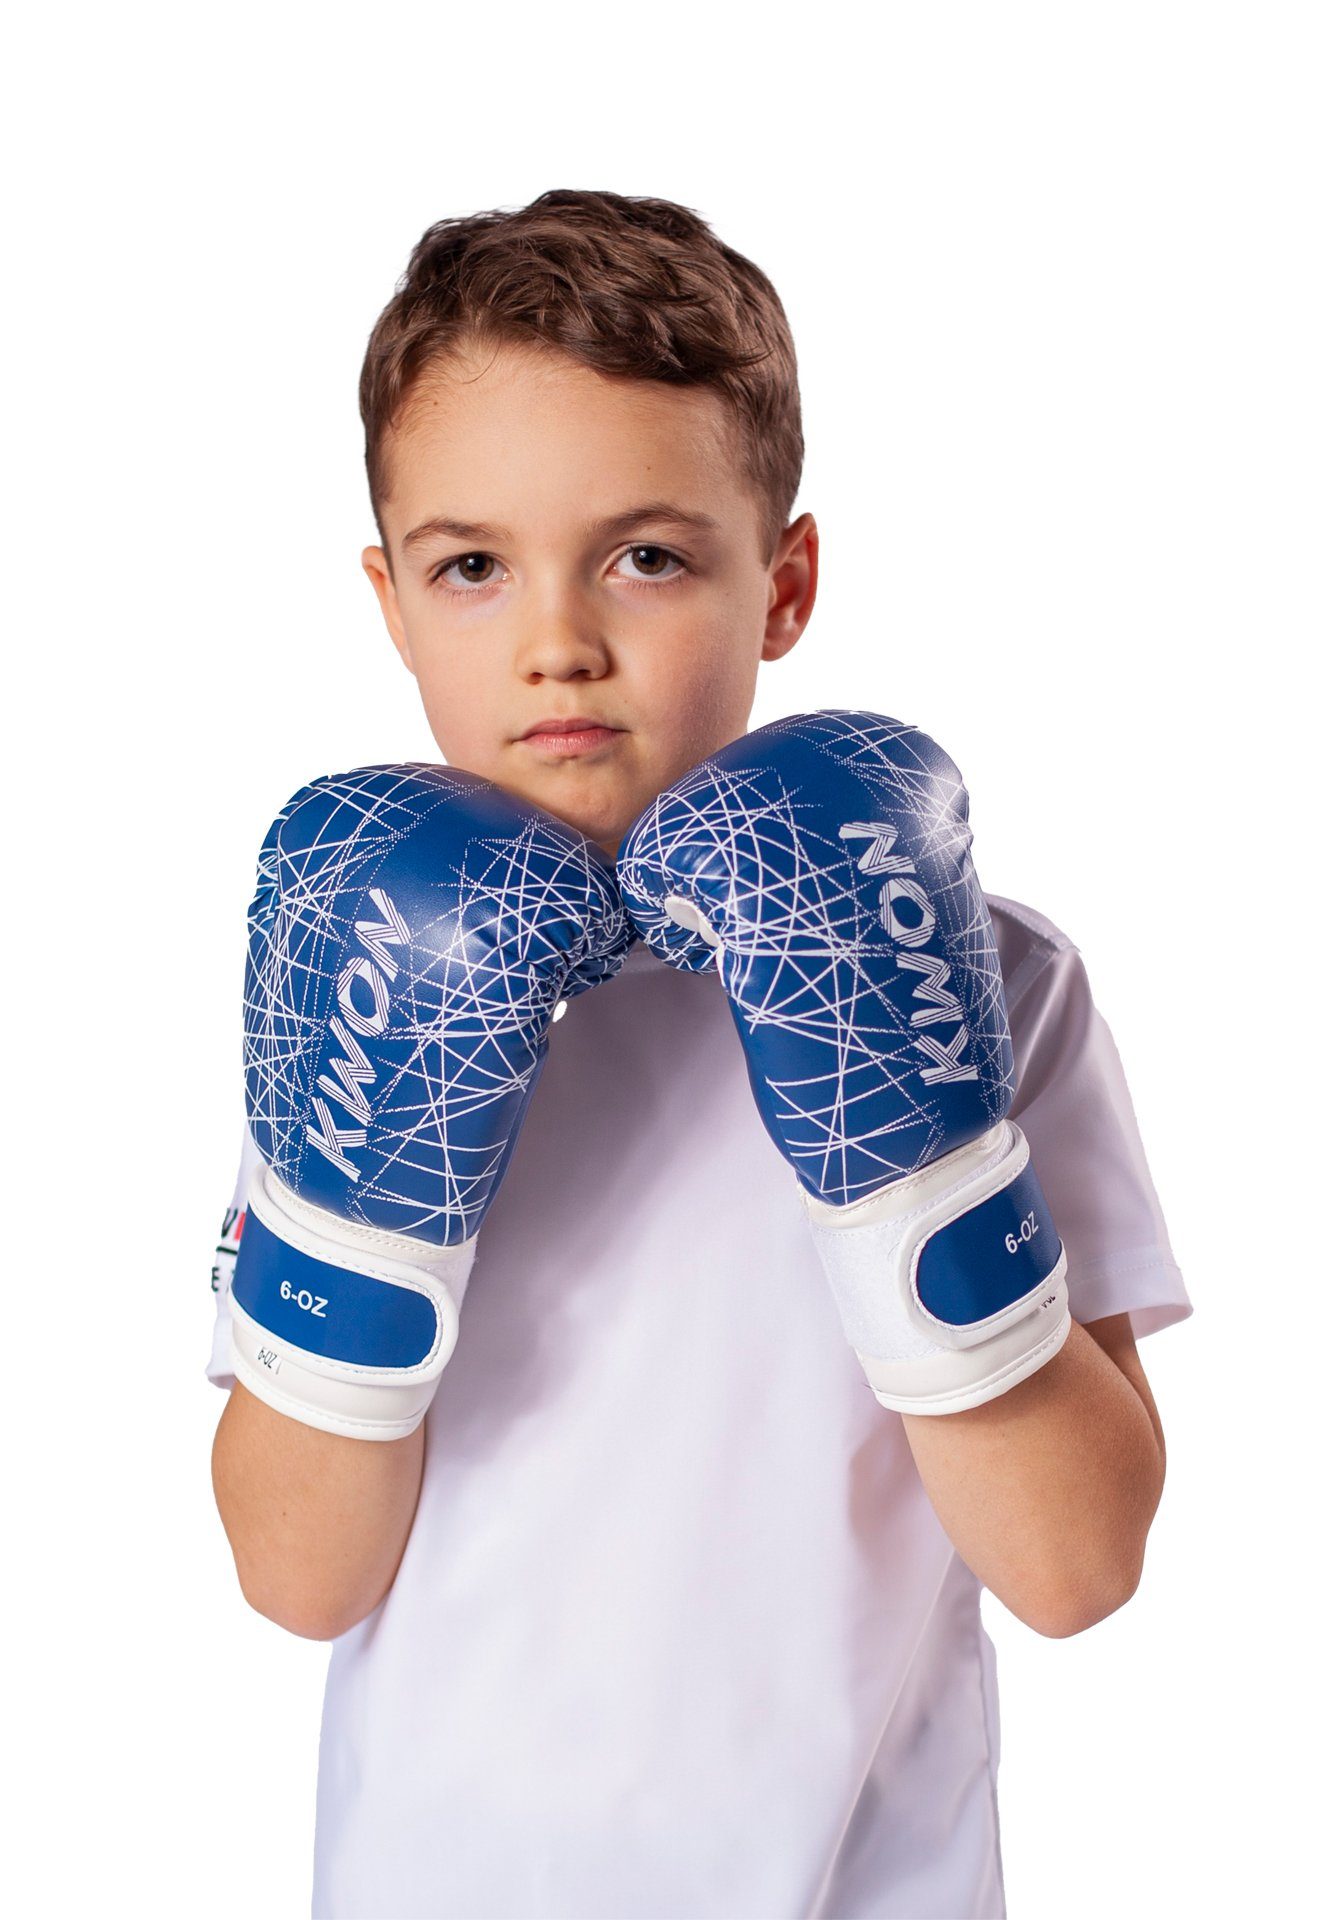 Qualität MMA 6 Boxhandschuhe neon Kinder KWON blau (small Boxen Box-Handschuhe hochwertige klein, Unzen, pink Kickboxen Kids Kinderboxhandschuhe),